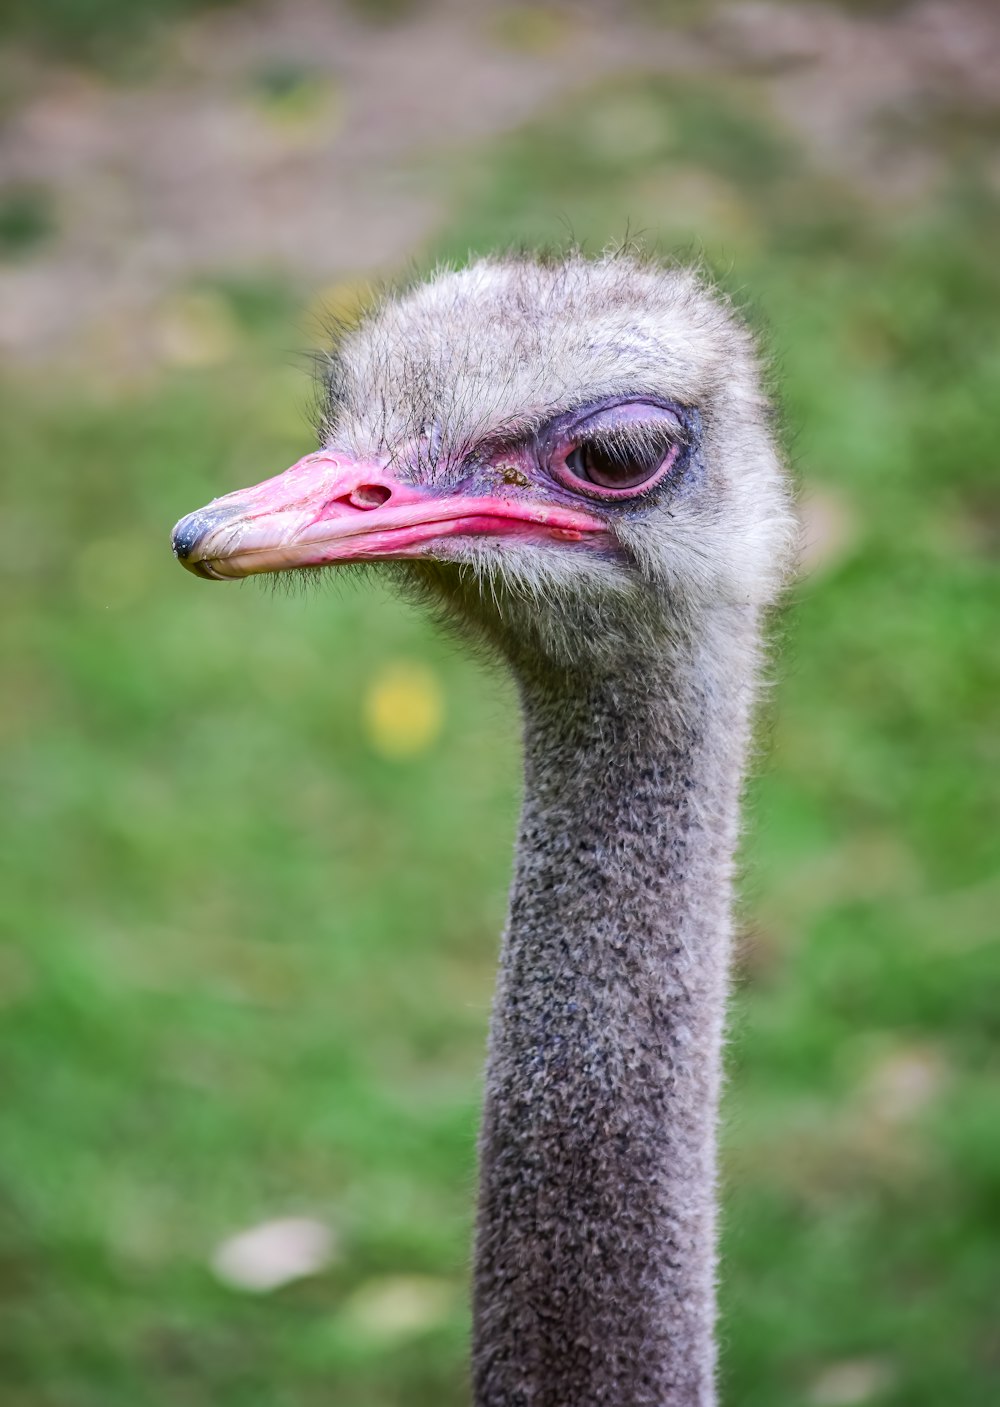 ostrich head in tilt shift lens